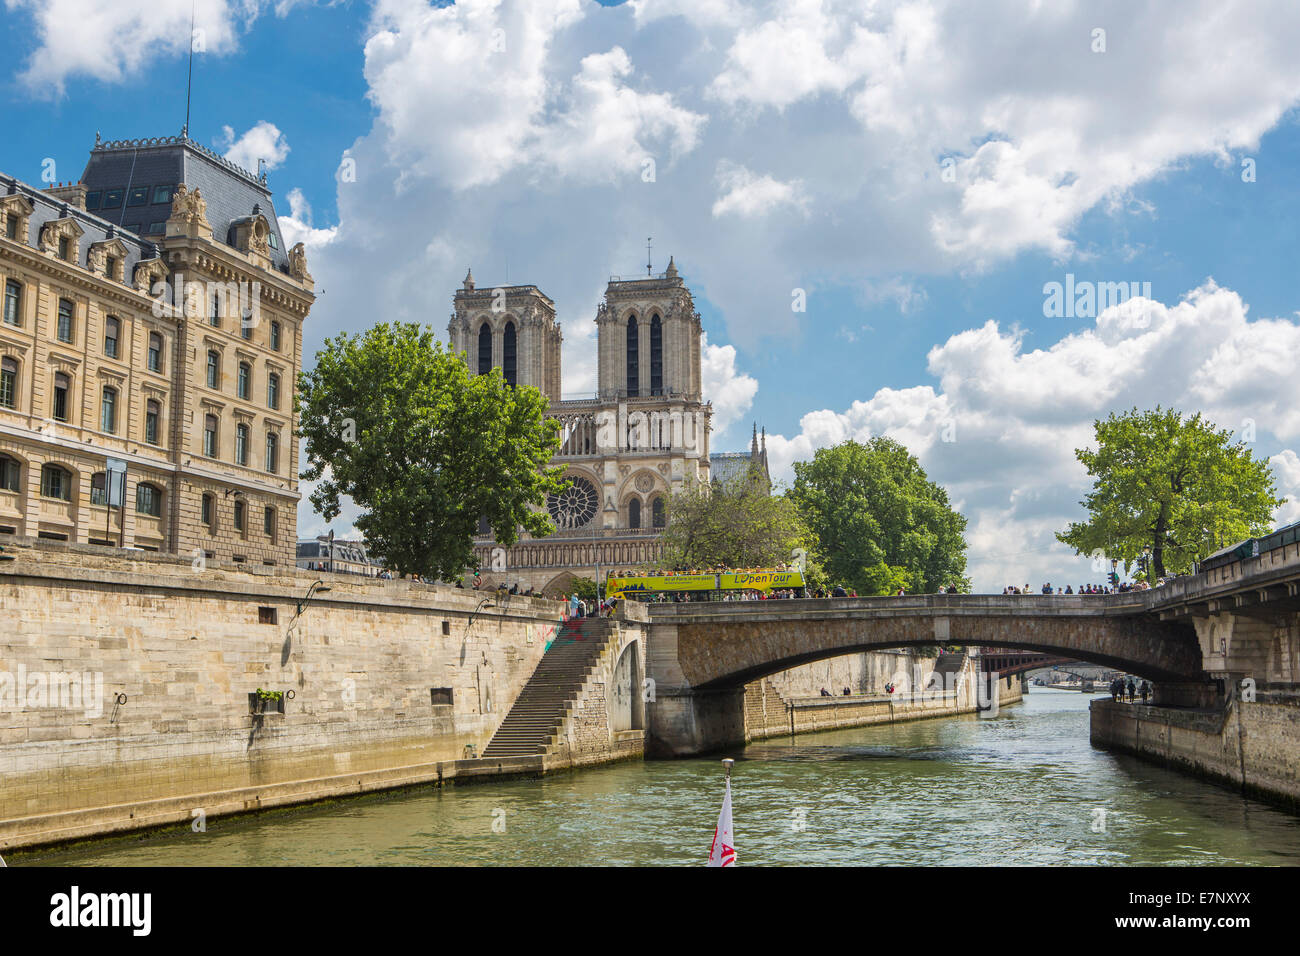 Cathédrale, Ville, France, Notre Dame, Paris, architecture, pont, cite, centre-ville, la Seine, le tourisme, voyages Banque D'Images